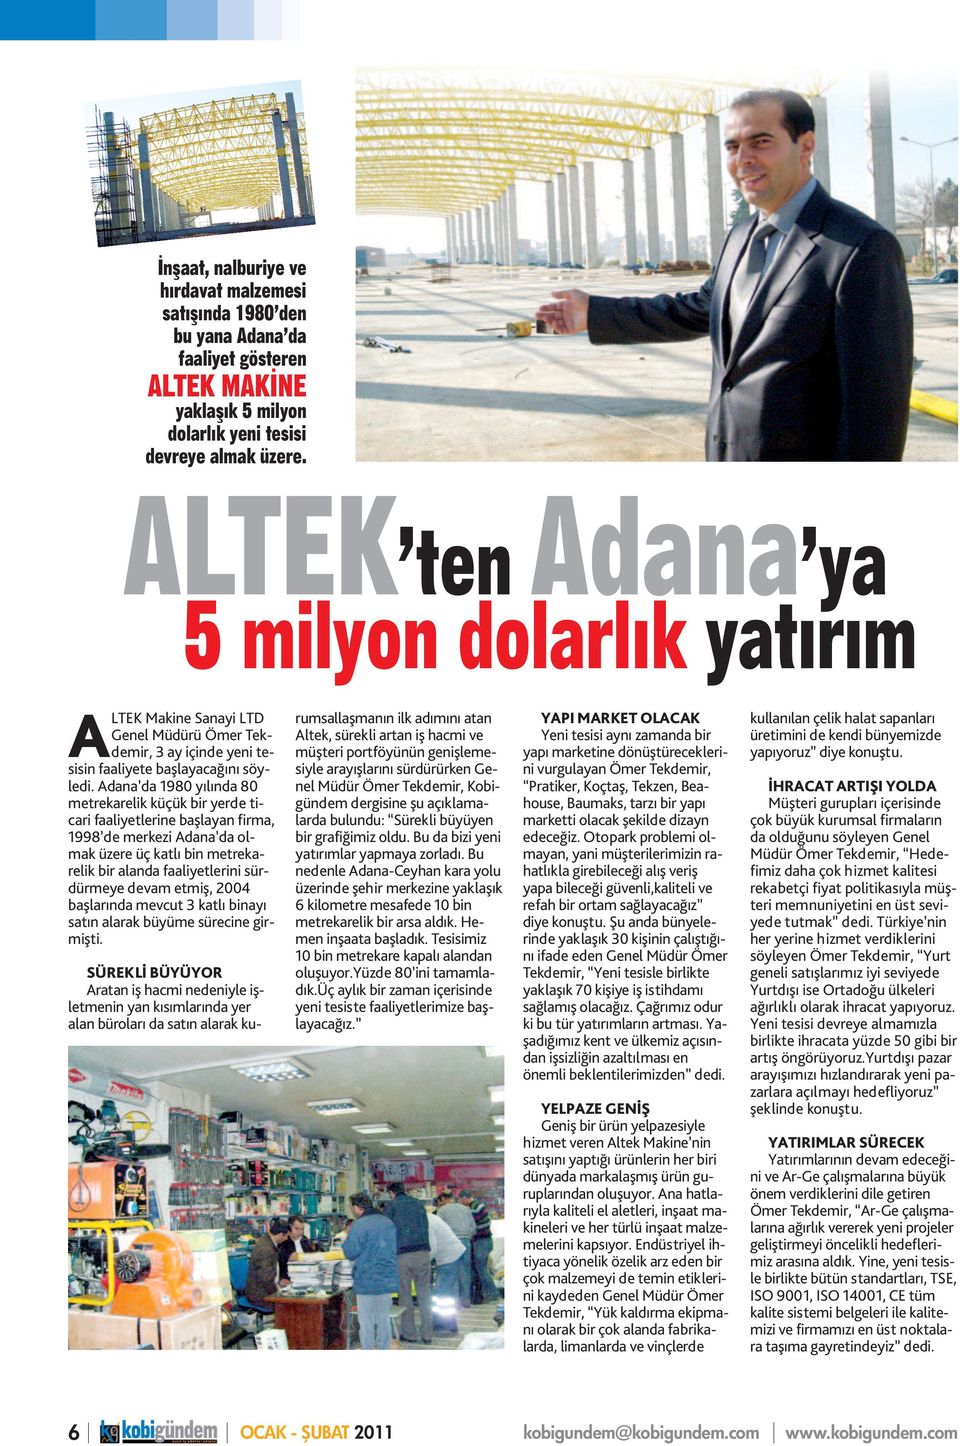 Adana da 1980 yılında 80 metrekarelik küçük bir yerde ticari faaliyetlerine başlayan firma, 1998 de merkezi Adana da olmak üzere üç katlı bin metrekarelik bir alanda faaliyetlerini sürdürmeye devam